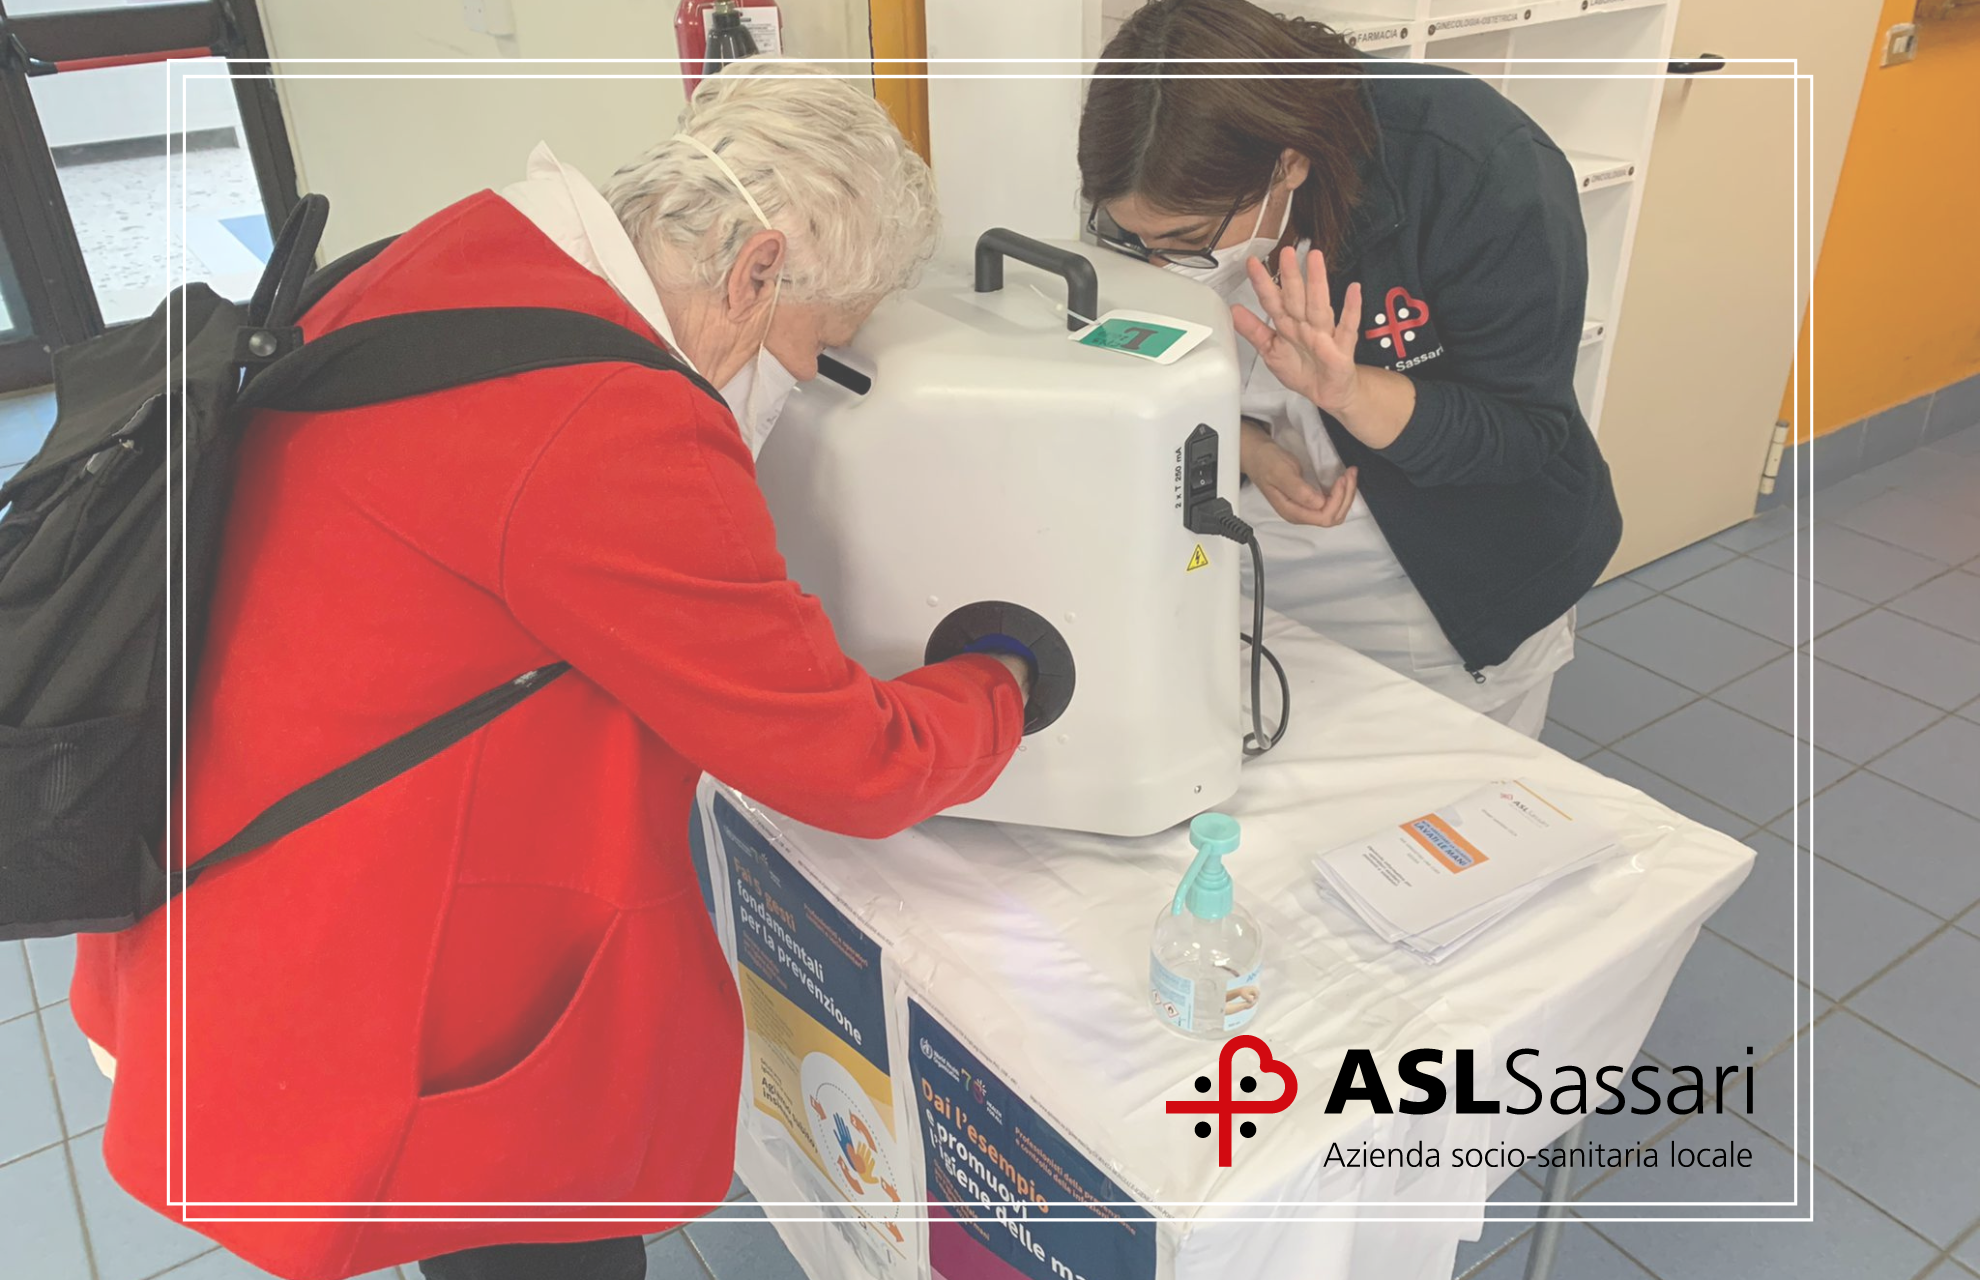 Asl Sassari e la Giornata Mondiale per l’igiene delle mani